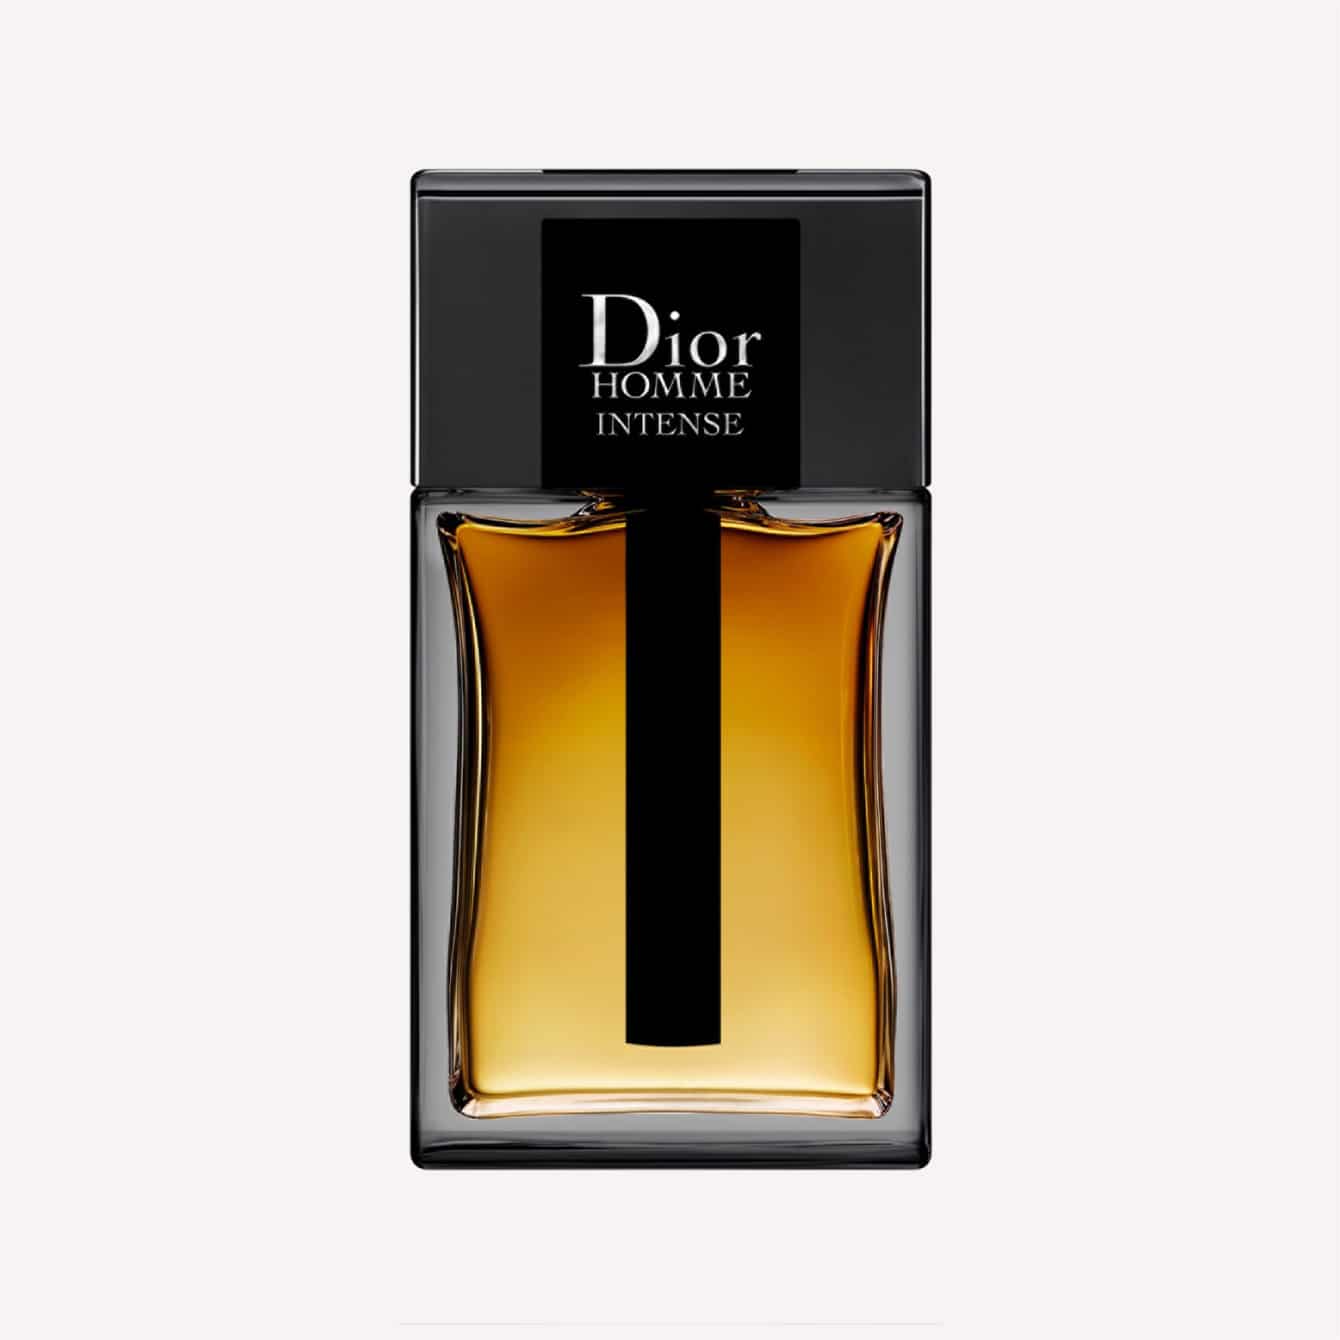 7 Best Dior Colognes for Men